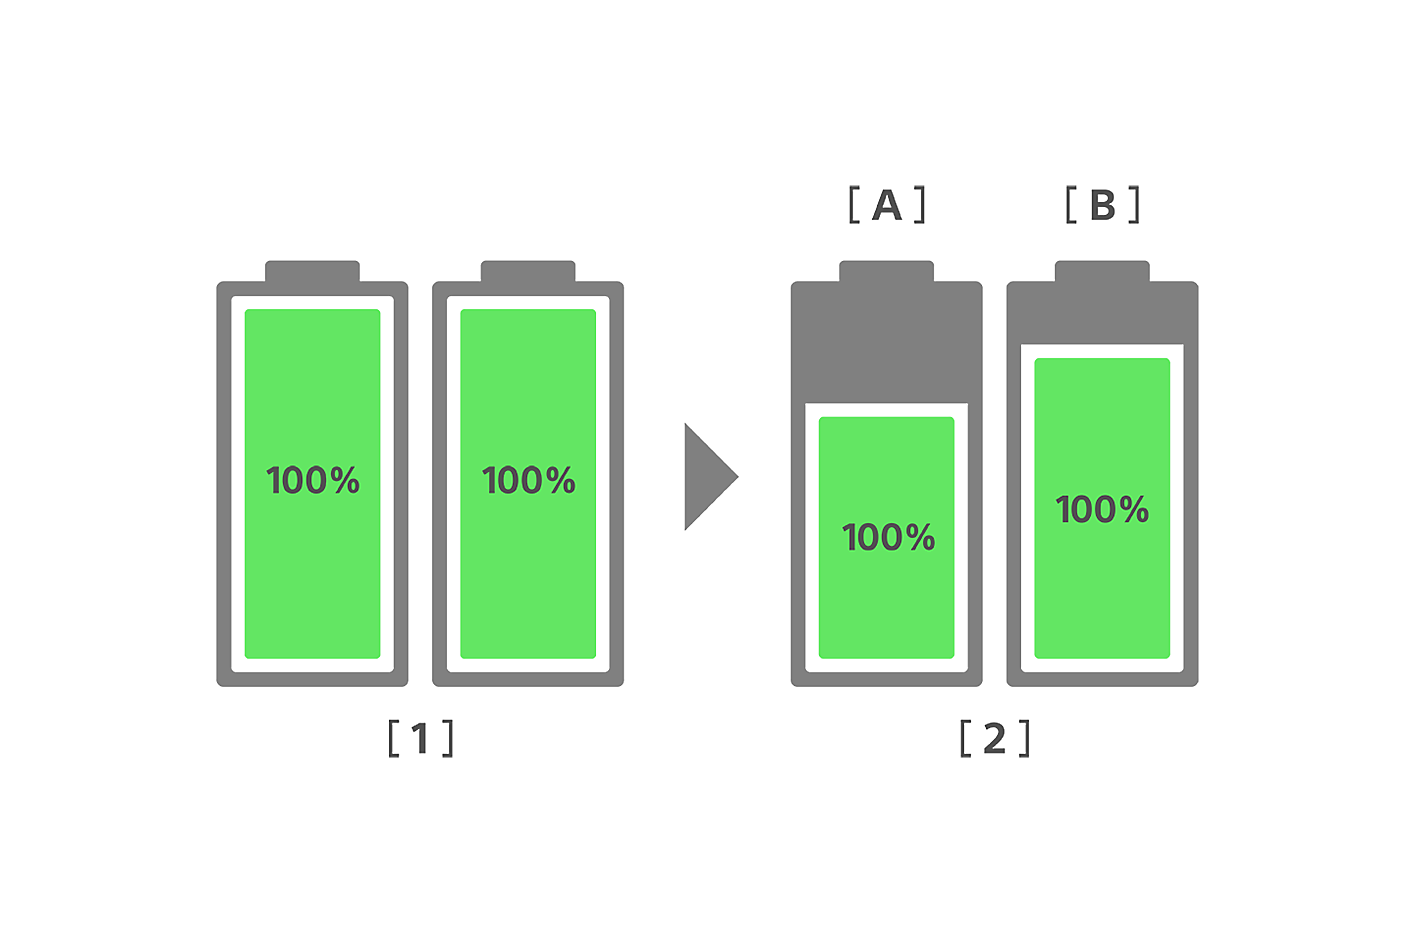 Hình ảnh minh họa so sánh tình trạng pin của điện thoại thông minh thường và điện thoại Xperia mới trước và sau 3 năm sử dụng